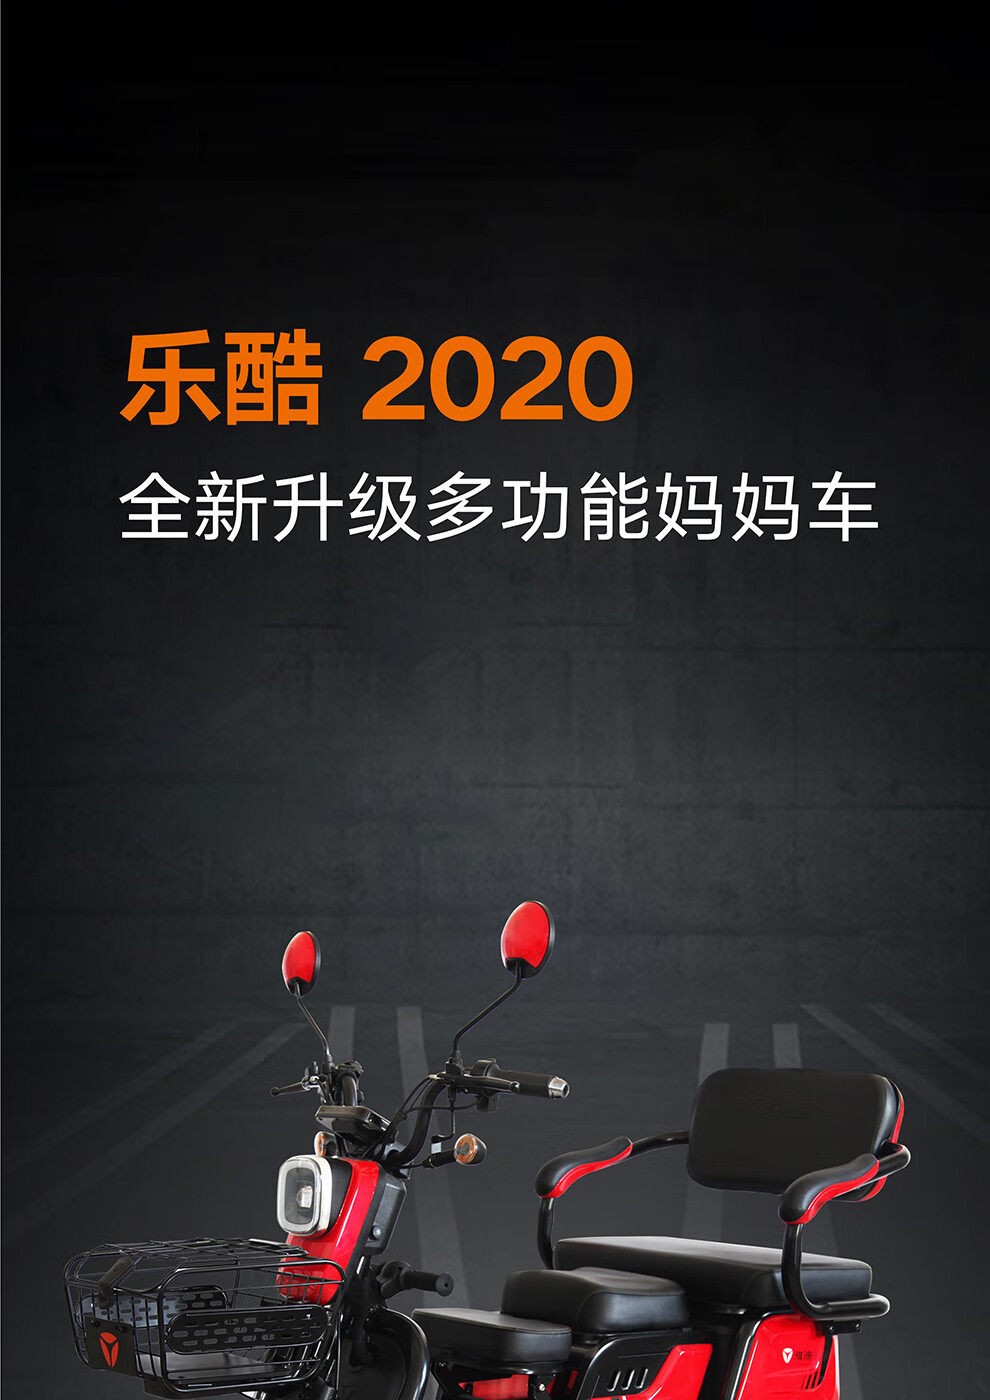 雅迪yadea新款48v电动车乐酷2020升级多功能电动三轮车助力电瓶车乐酷